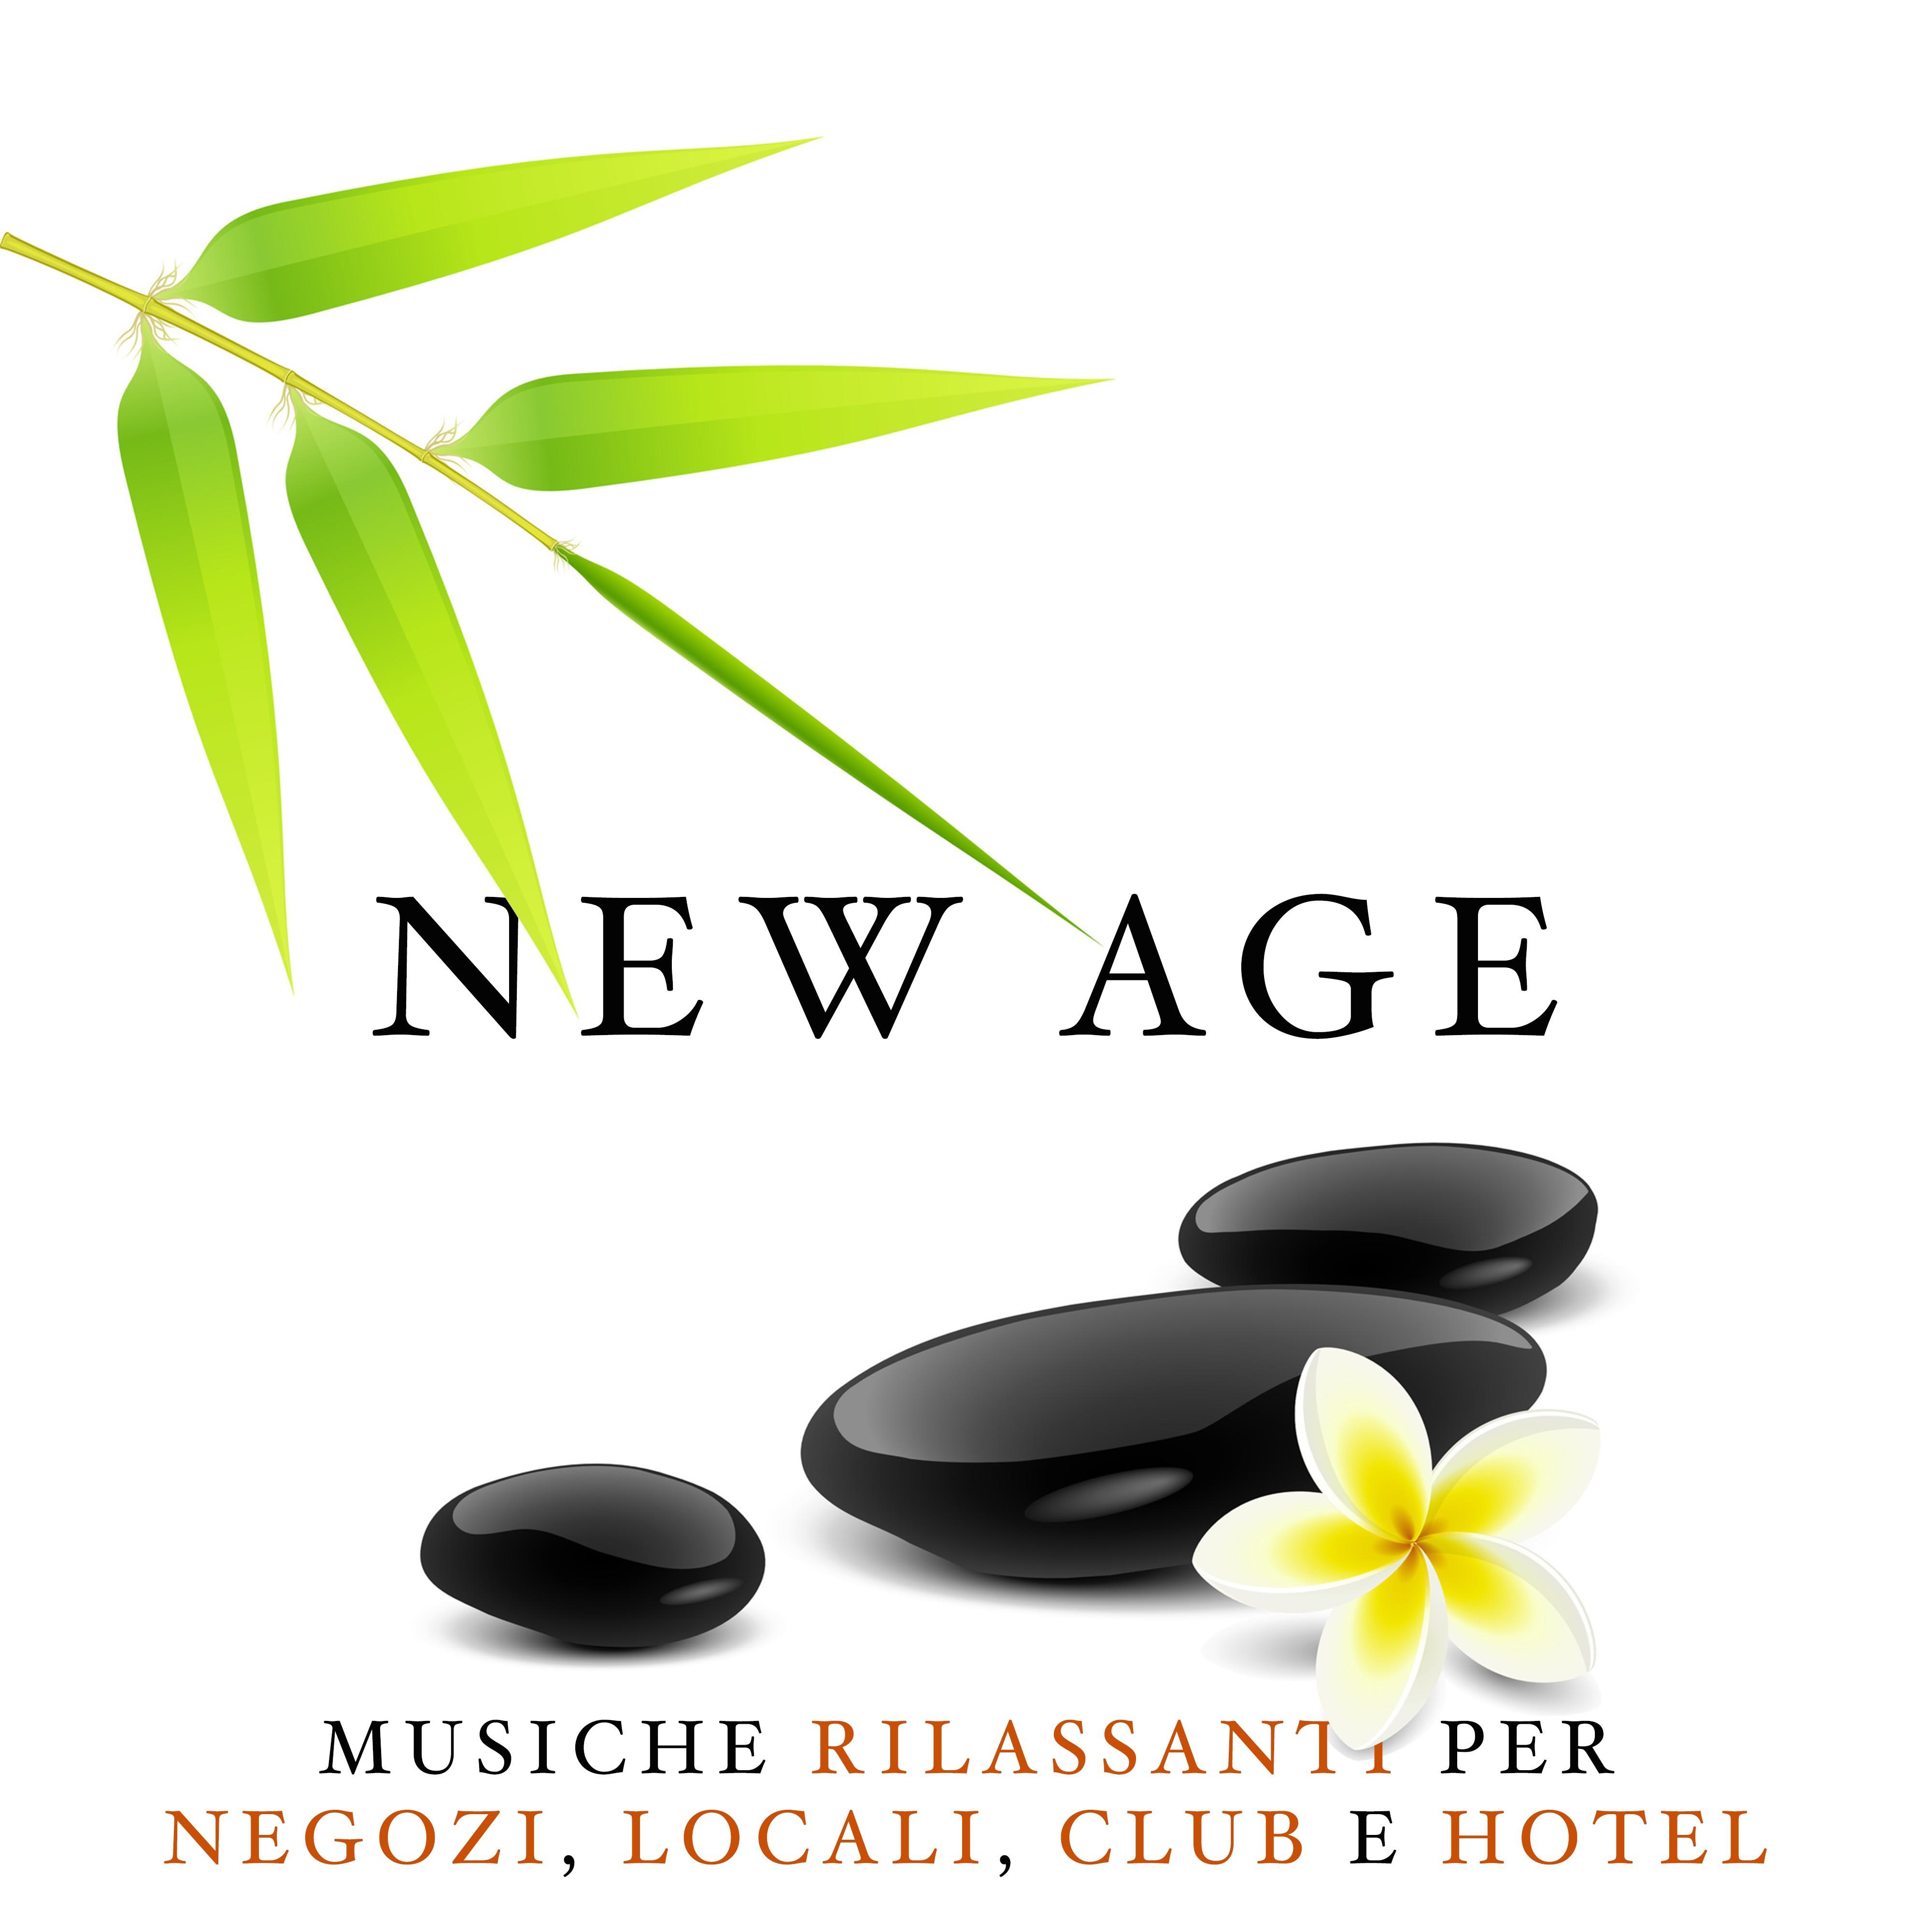 New Age - Una Collezione delle Migliori Musiche Rilassanti Strumentali per Negozi, Locali, Club e Hotel